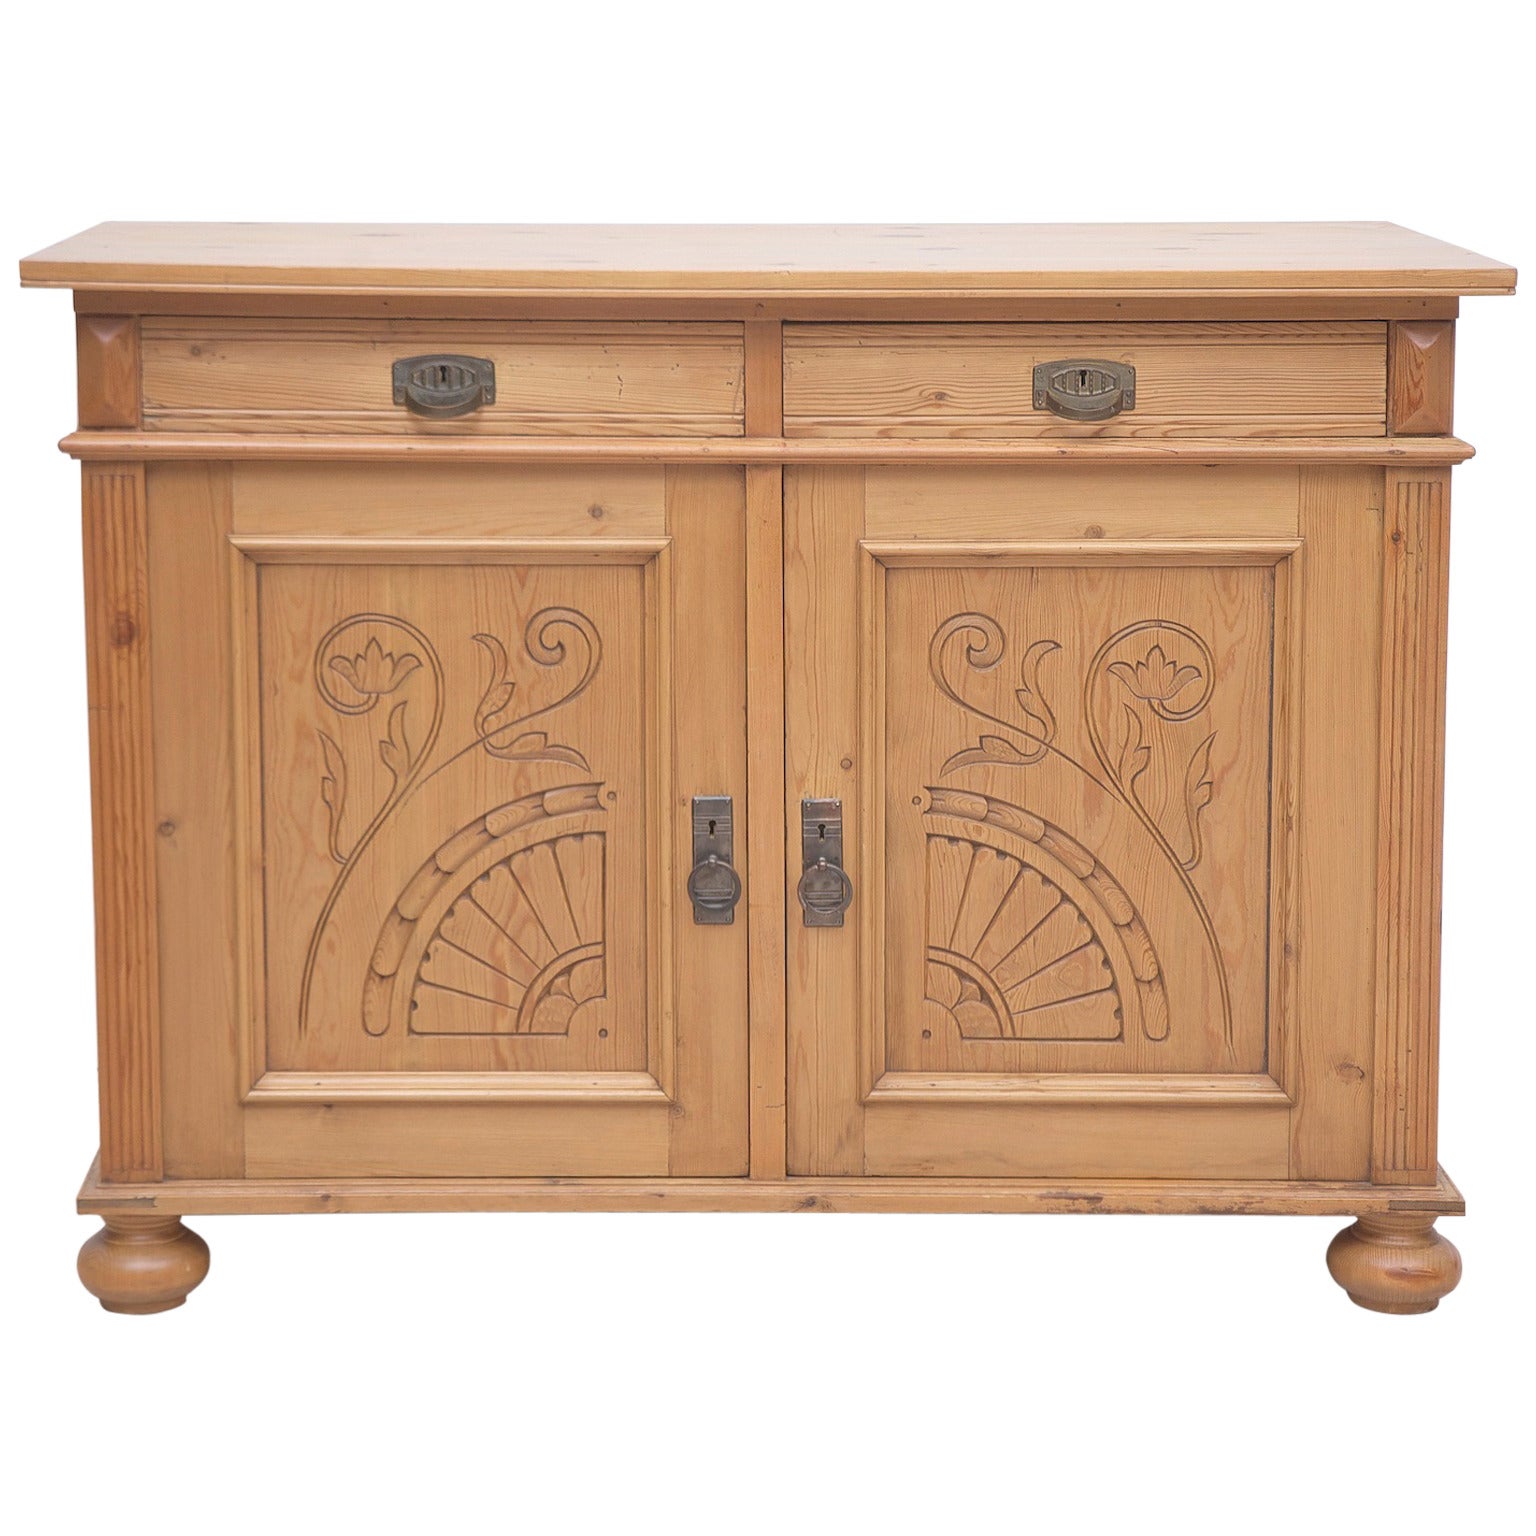 Jugendstiel or Art Nouveau Cabinet in Pine